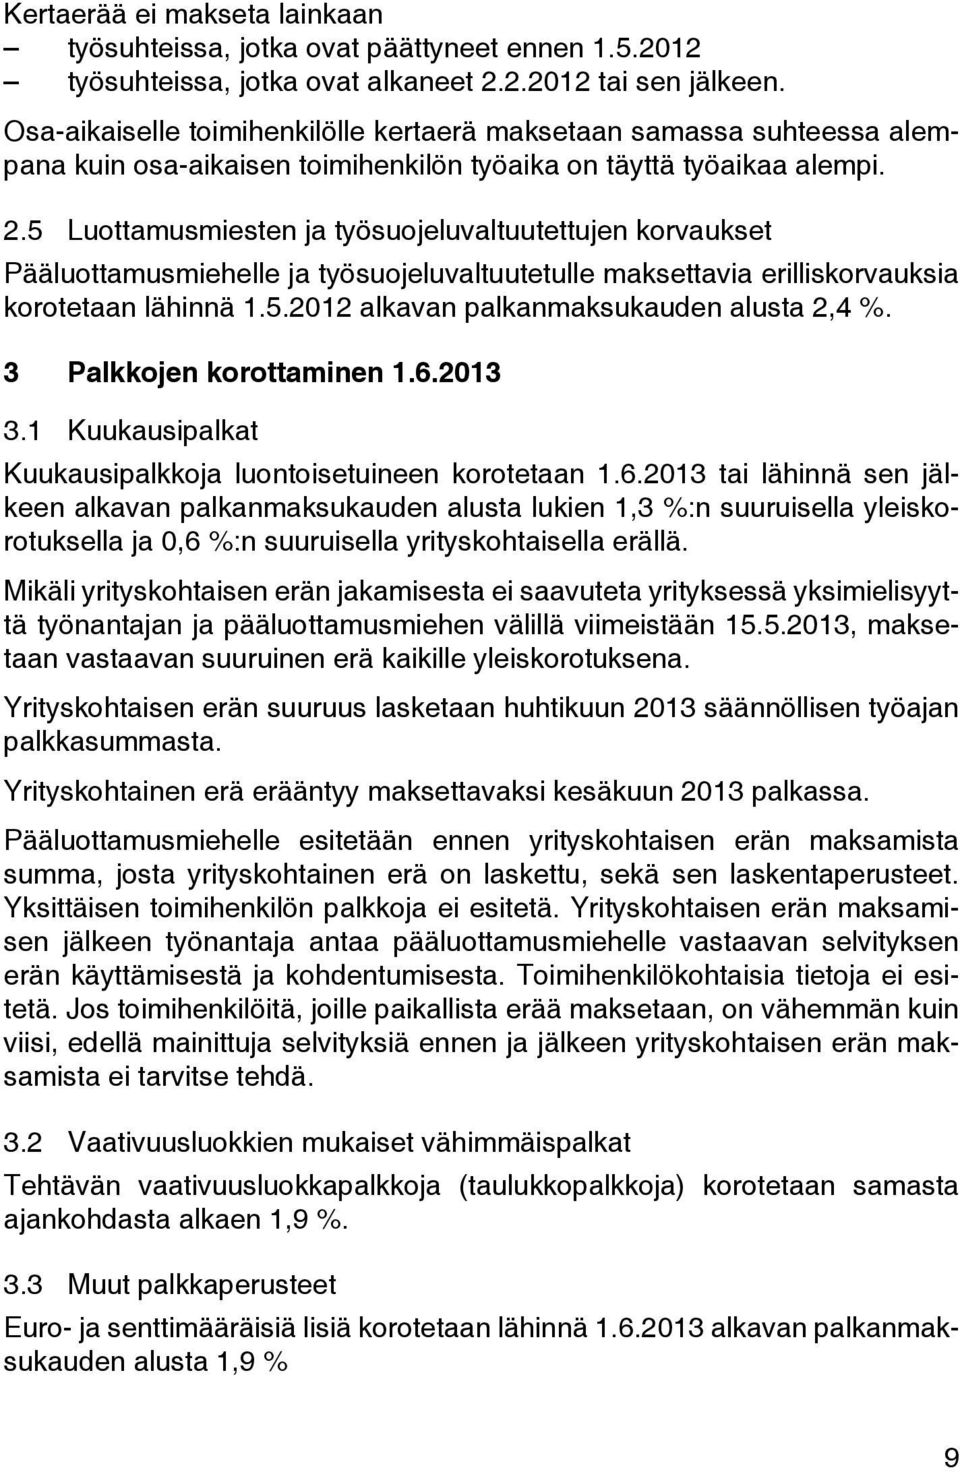 5 Luottamusmiesten ja työsuojeluvaltuutettujen korvaukset Pääluottamusmiehelle ja työsuojeluvaltuutetulle maksettavia erilliskorvauksia korotetaan lähinnä 1.5.2012 alkavan palkanmaksukauden alusta 2,4 %.